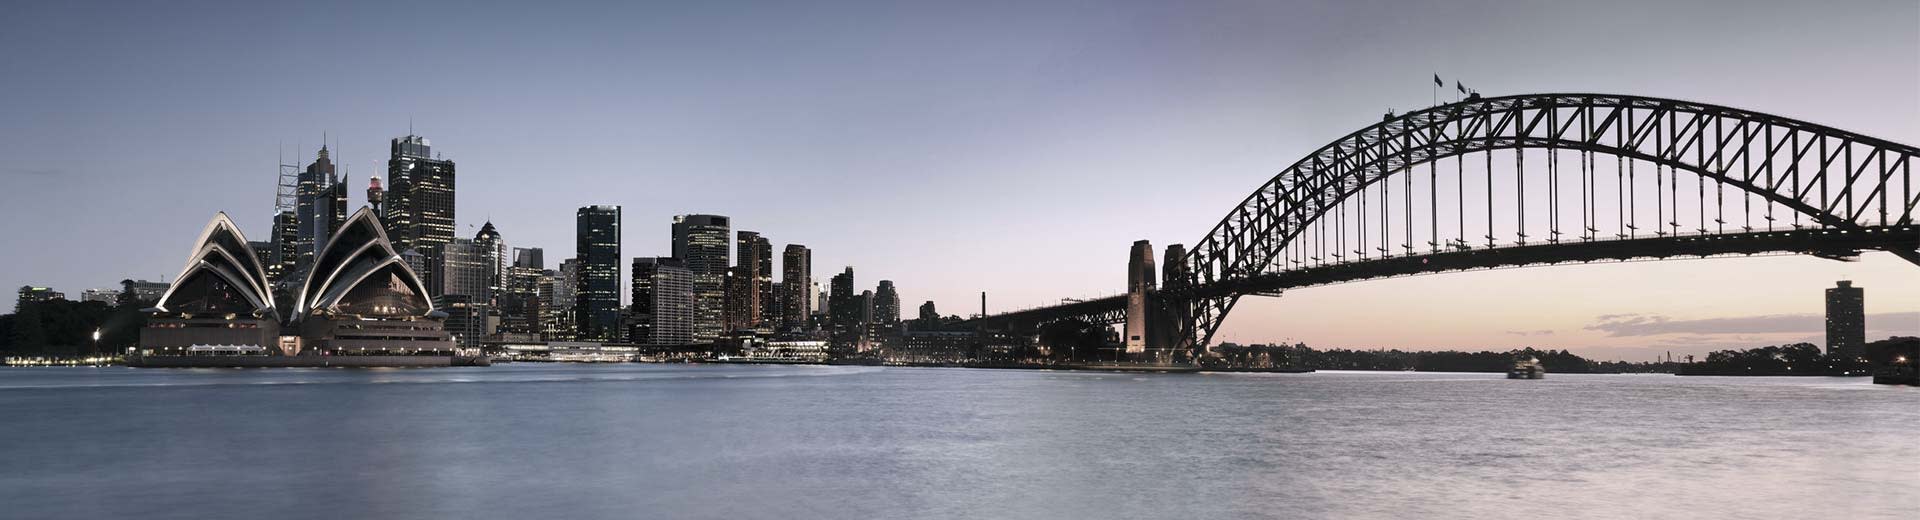 有名なシドニー・オペラハウスがこのシーンを支配し、右手には複数のビルとシドニーブリッジがある。